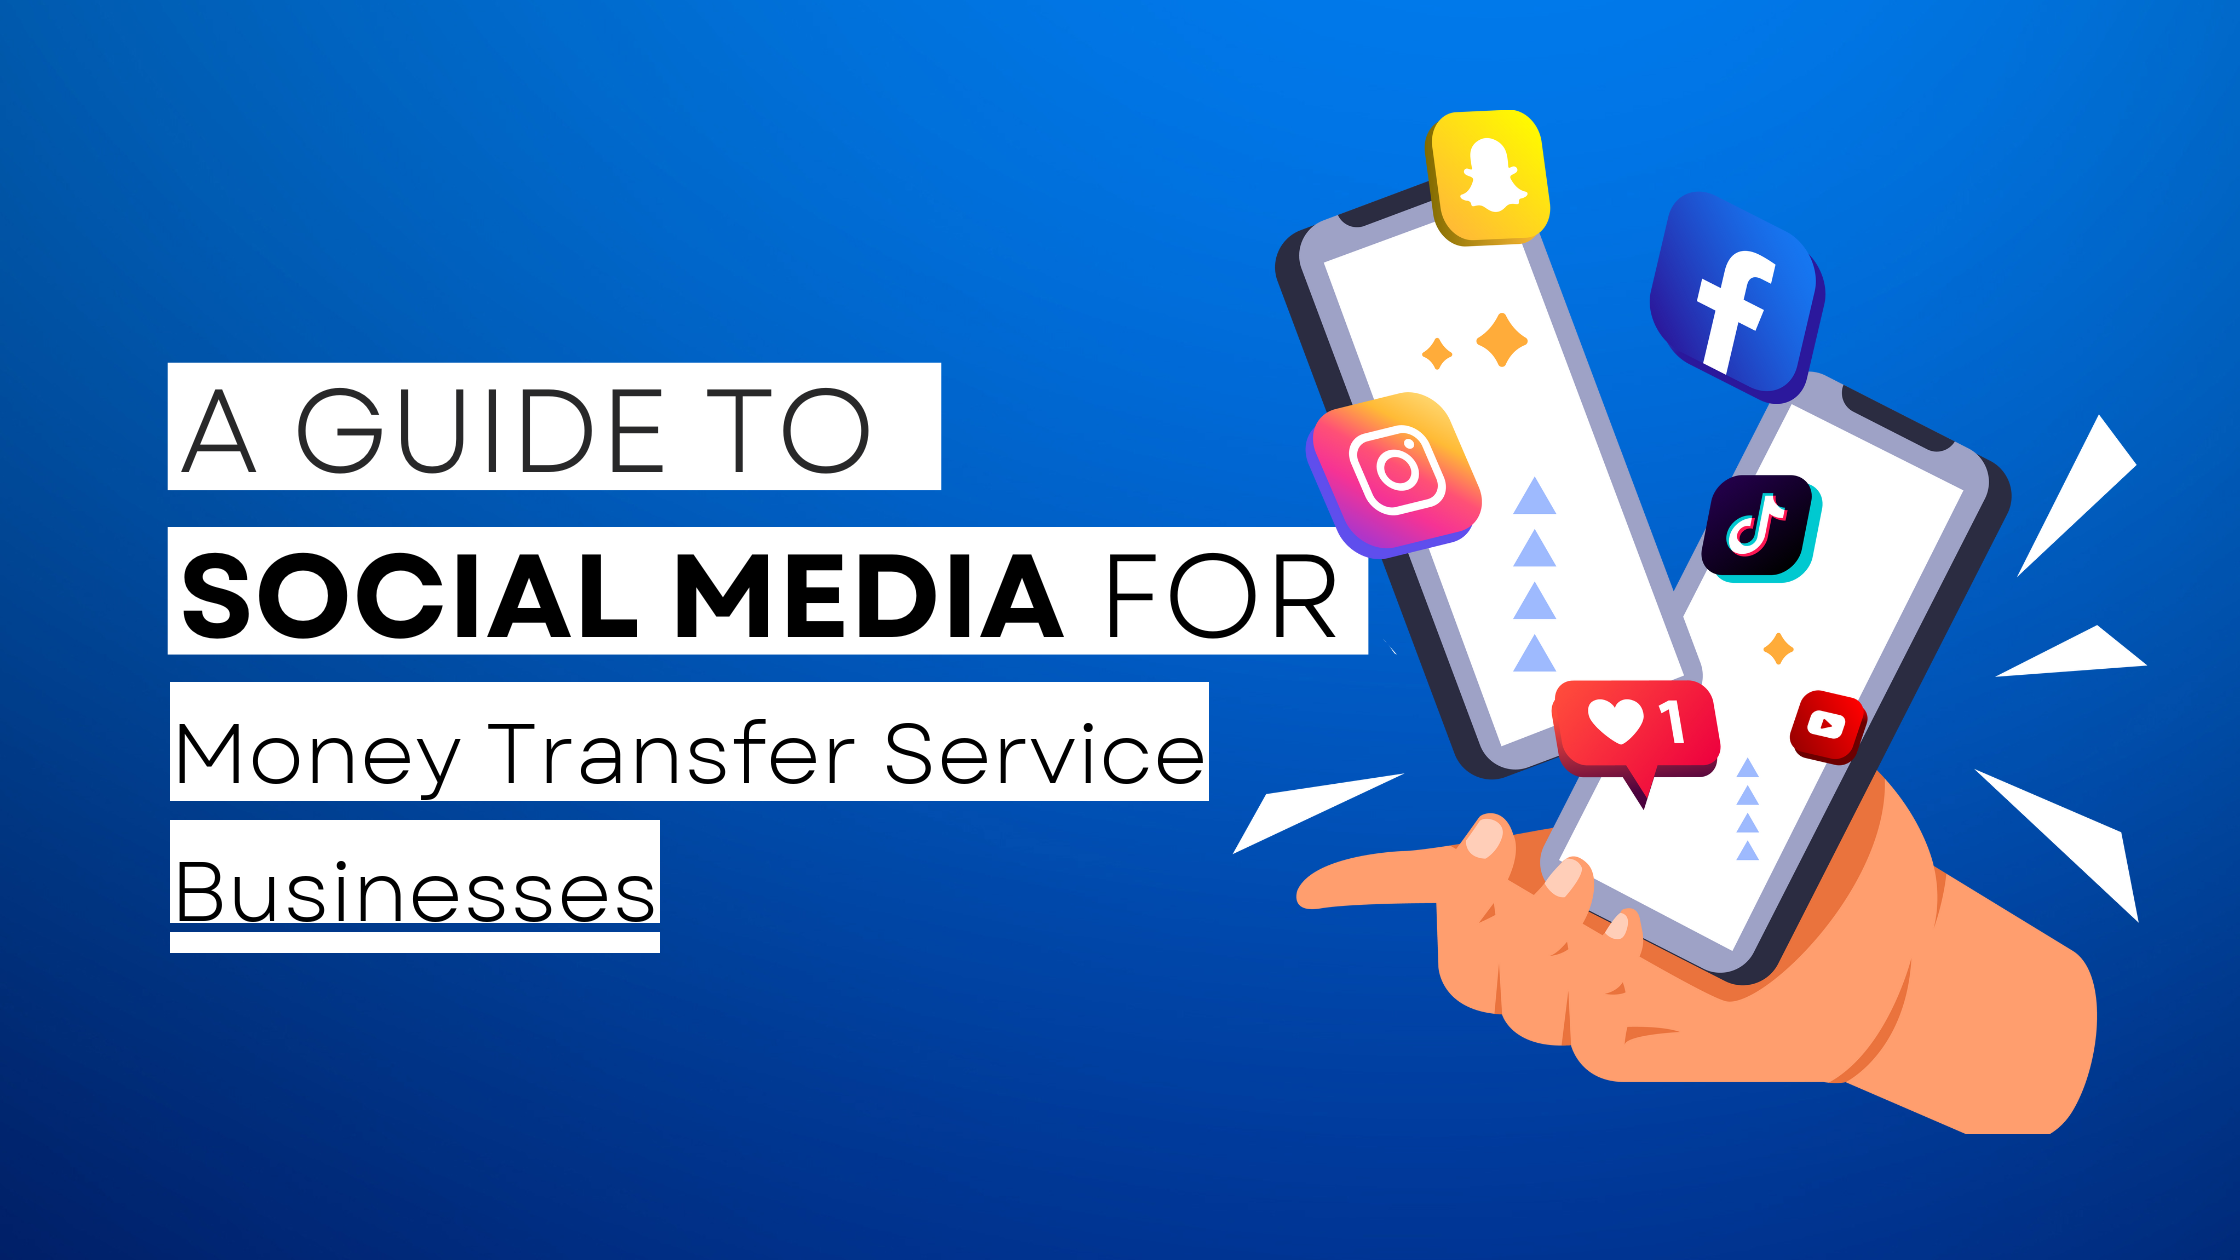 How to start Money Transfer Service on social media